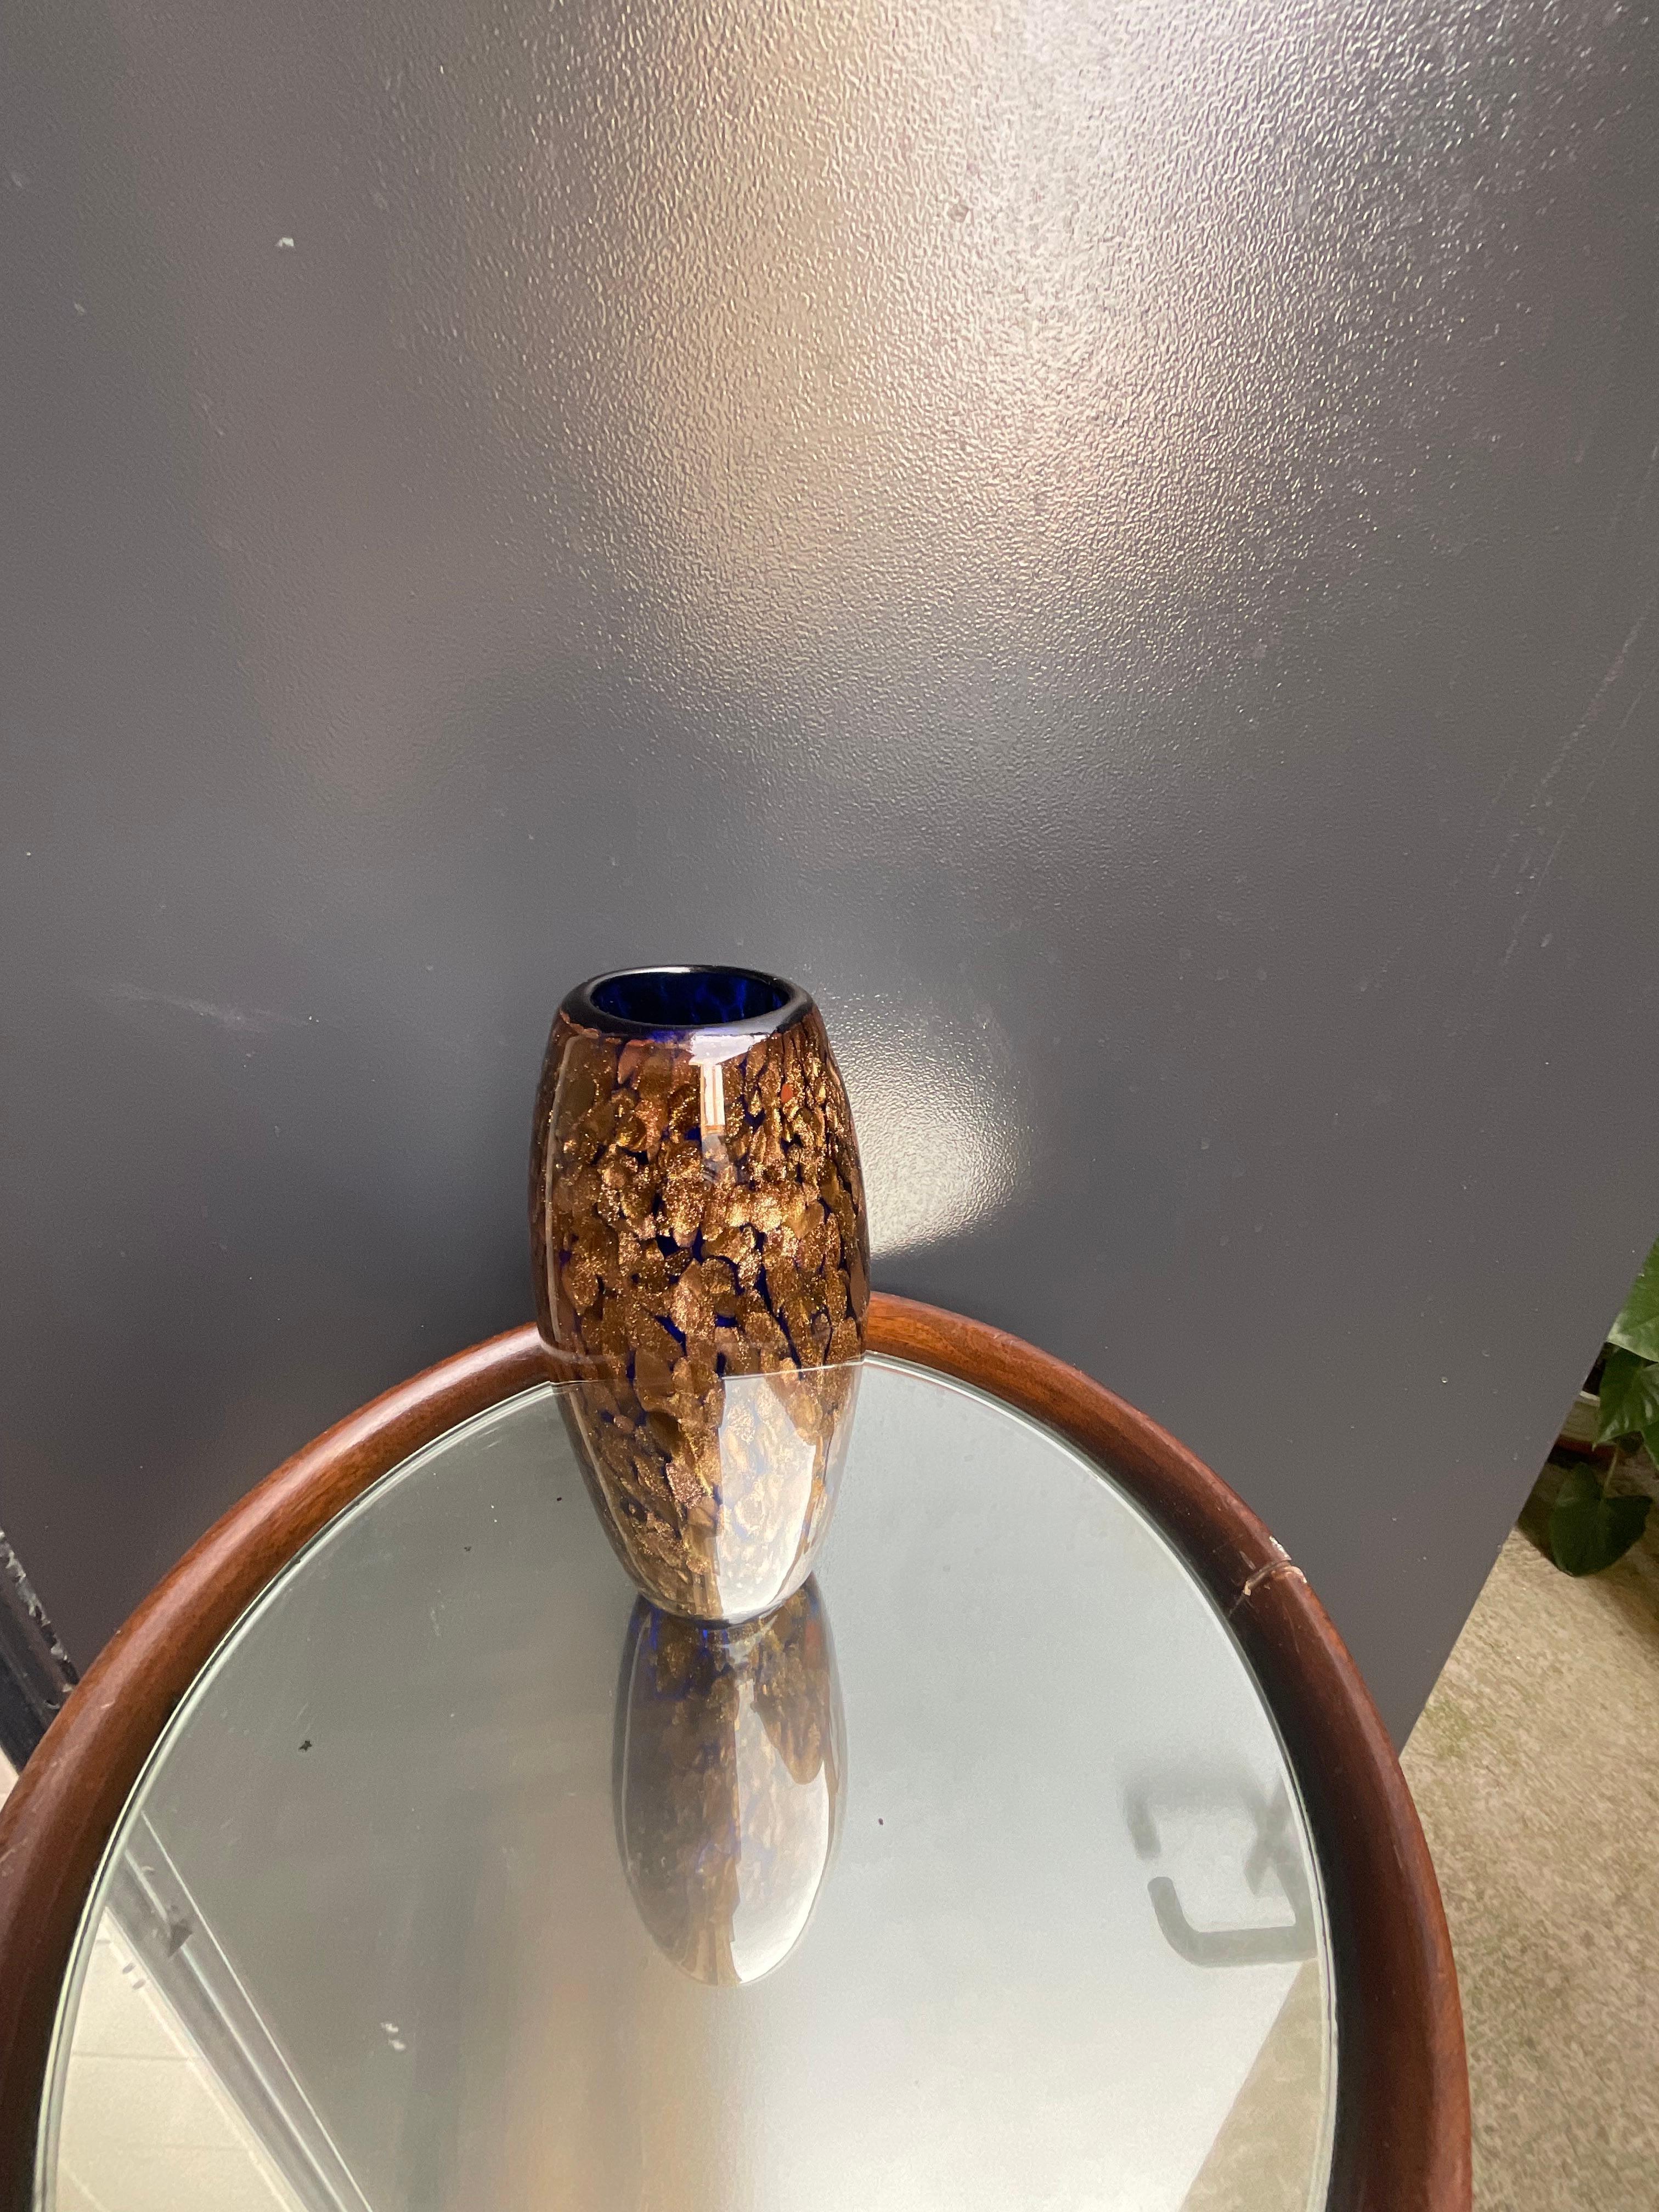 Magnifique forme de ce vase Murano bleu cobalt avec aventurine cuivrée.
Vase de collection réalisé par la verrerie de Murano Seguso dans les années 1960.